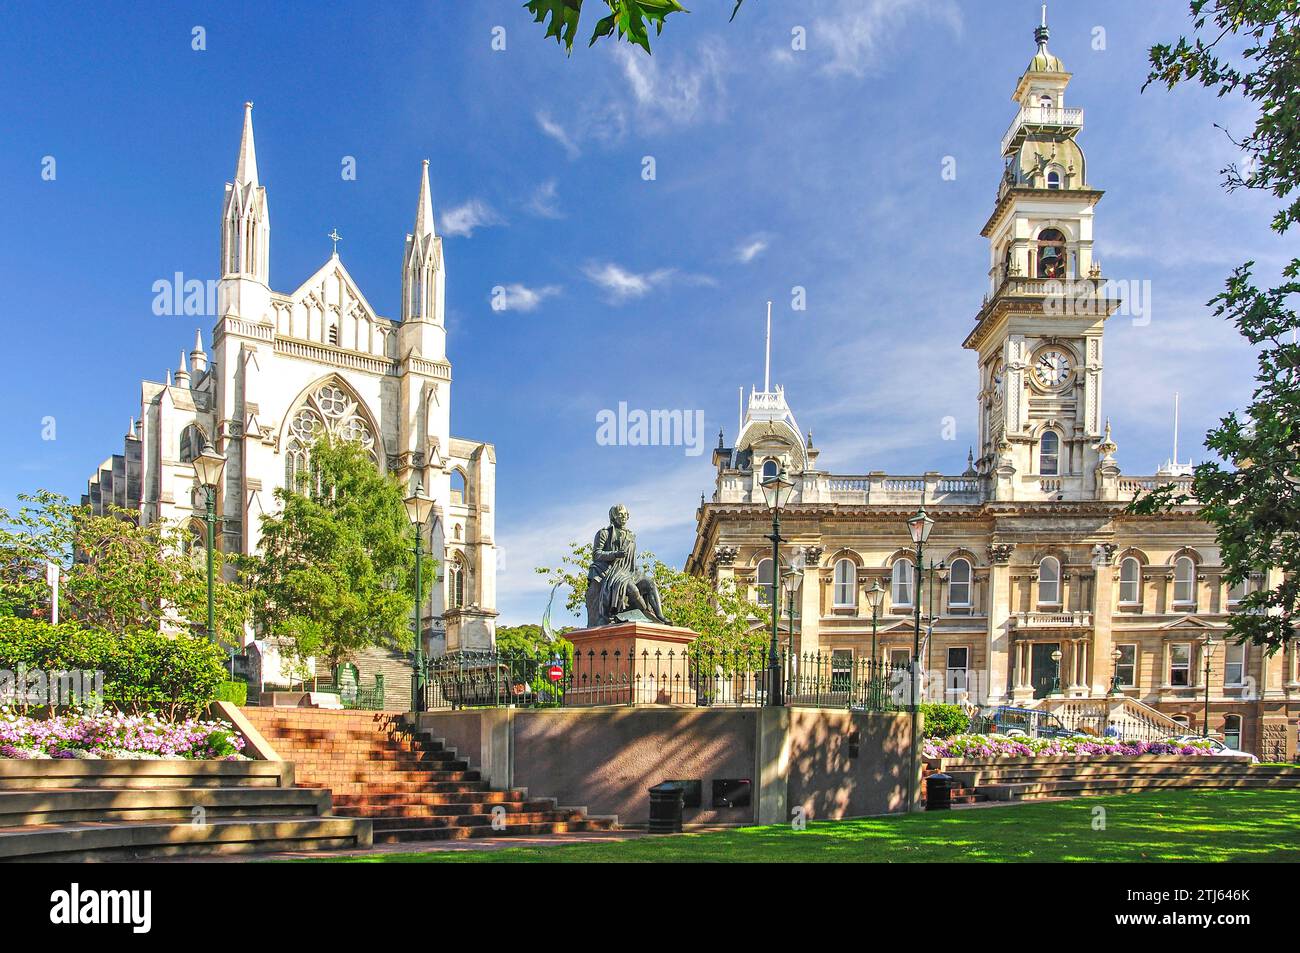 St.Paul's Cathedral, la Statue de Robert Leroux et Dunedin Town Hall, l'octogone, Dunedin, Otago, île du Sud, Nouvelle-Zélande Banque D'Images